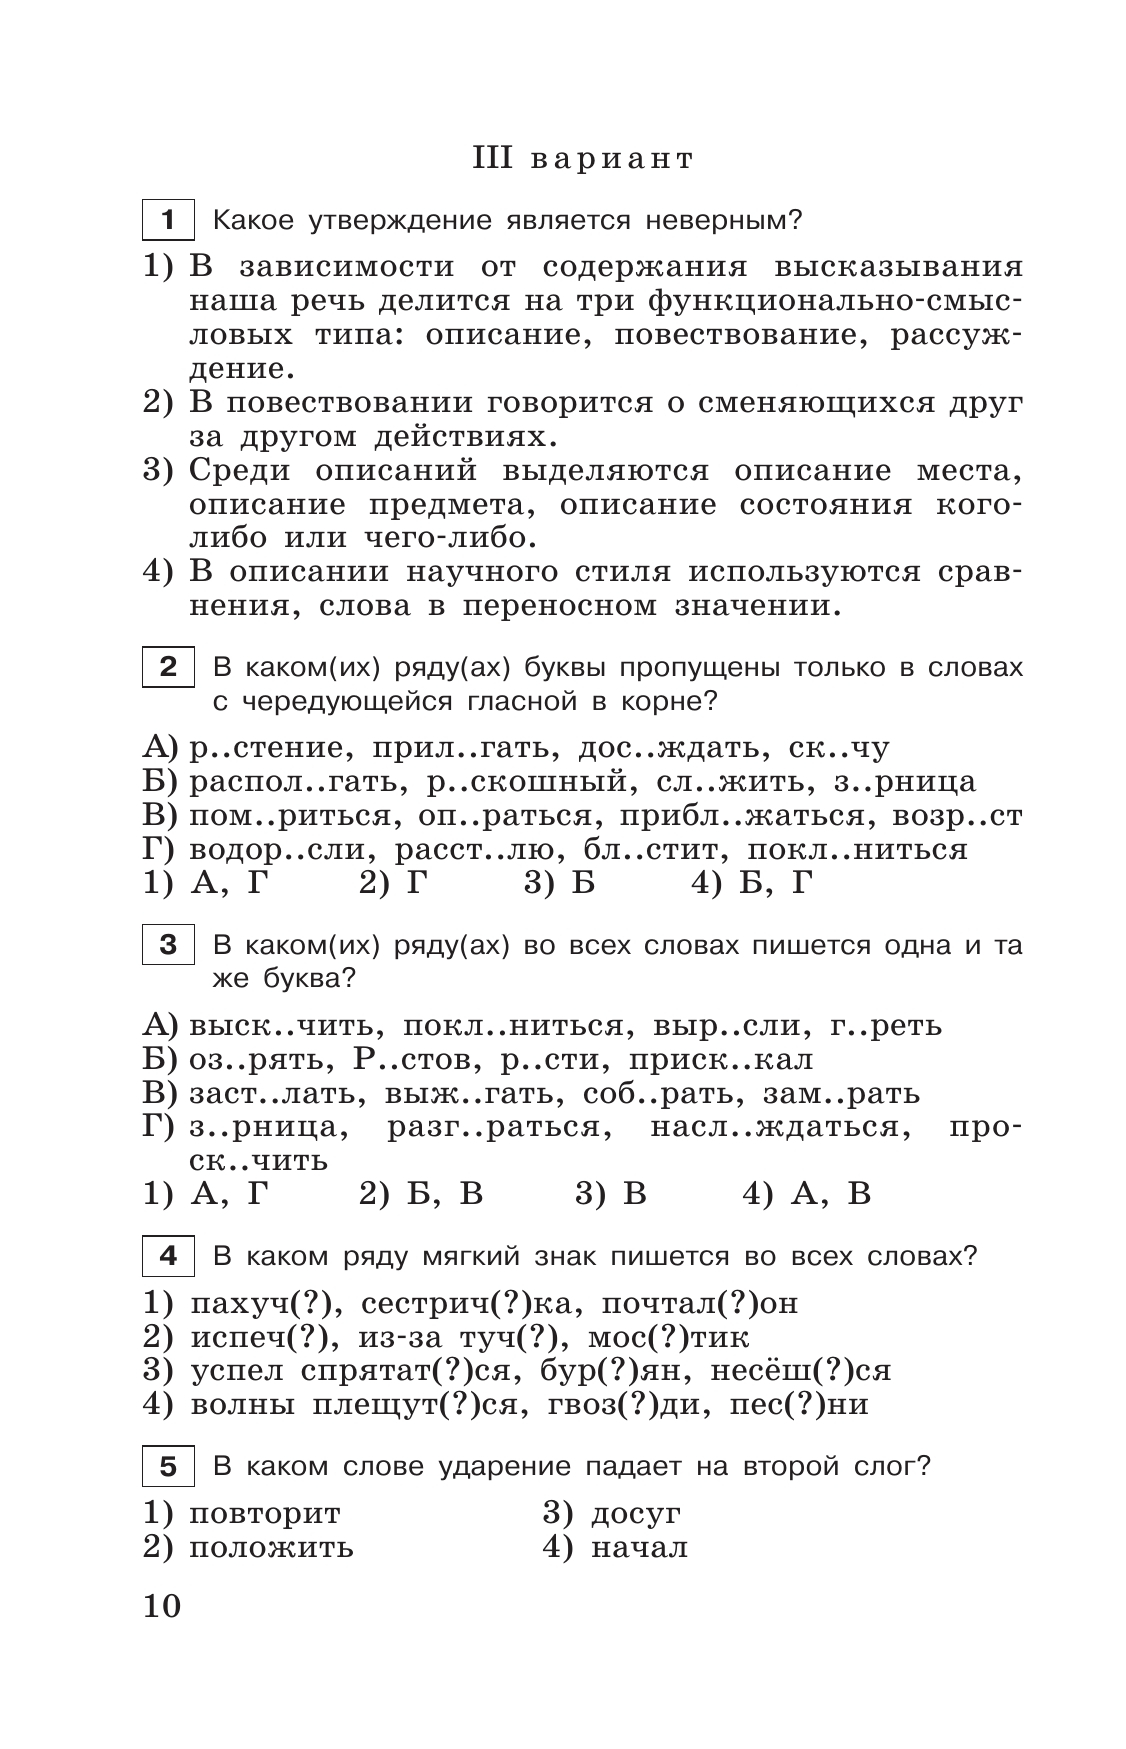 Тестовые задания по русскому языку. 6 класс. 5